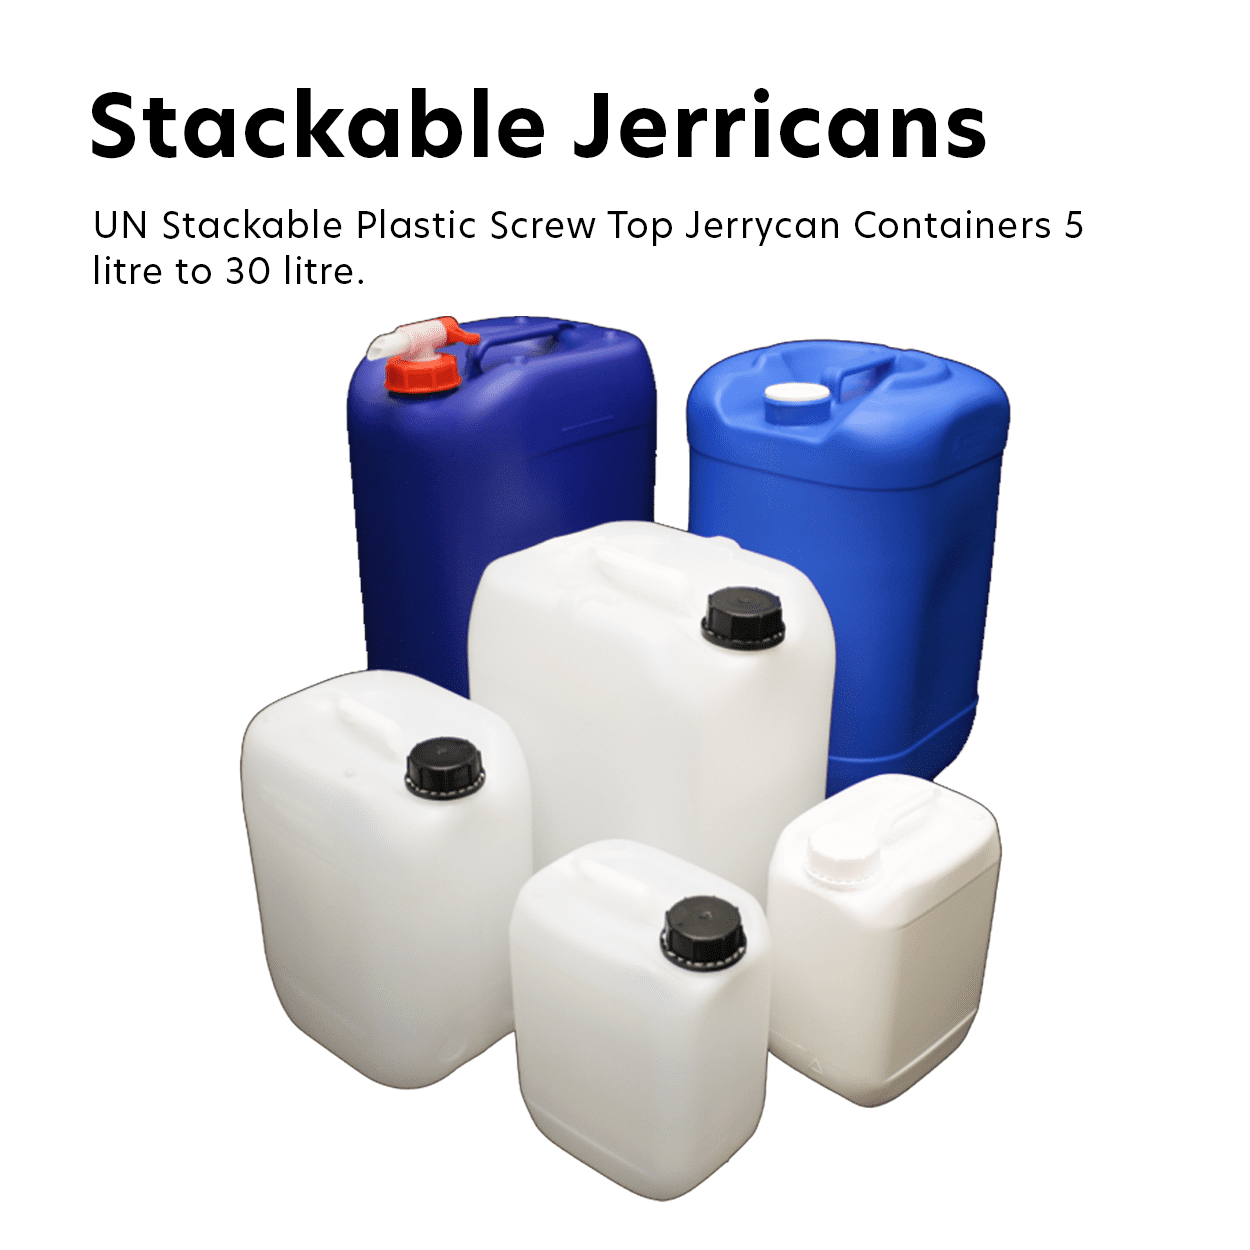 Stackable Jerricans